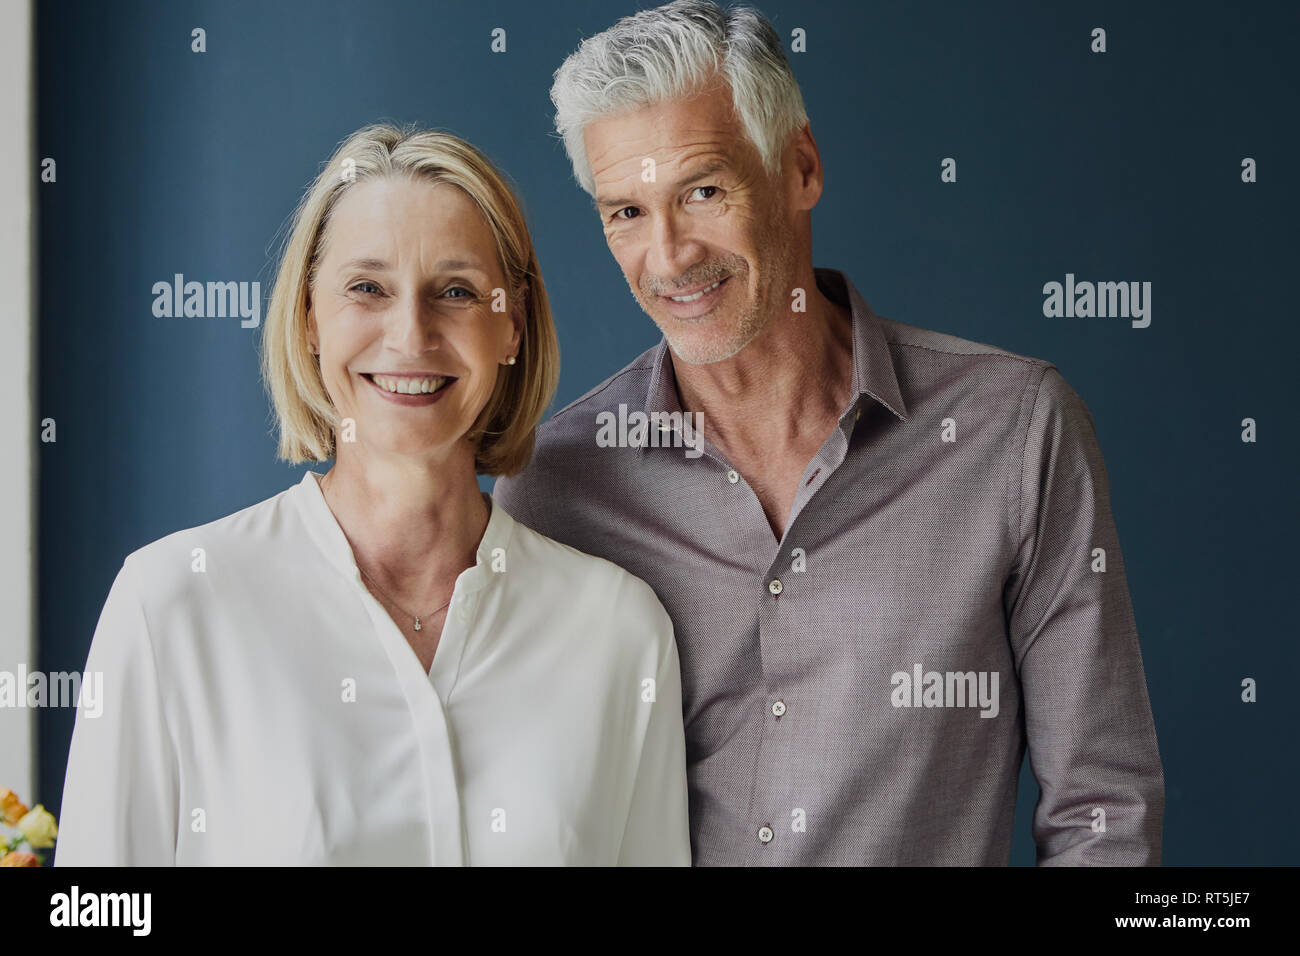 Portrait of smiling mature couple Banque D'Images